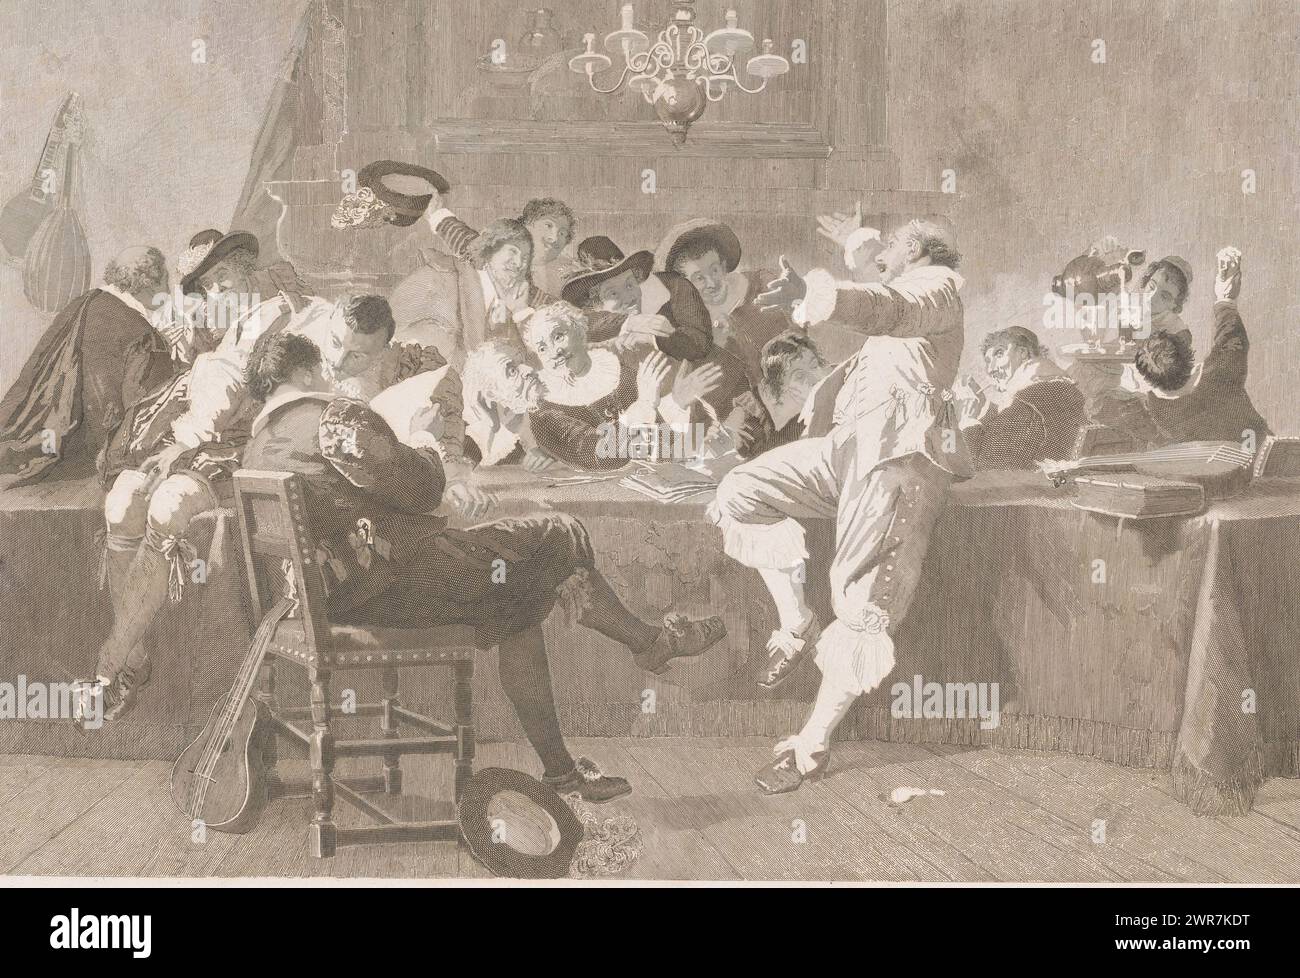 Jolly Company von Männern in Kleidung des 17. Jahrhunderts, Druckerei: Joseph Arnold Demannez, (signiert vom Künstler), Belgien, 1836 - 1902, Papier, Gravur, Ätzen, Höhe 432 mm x Breite 613 mm, Druck Stockfoto